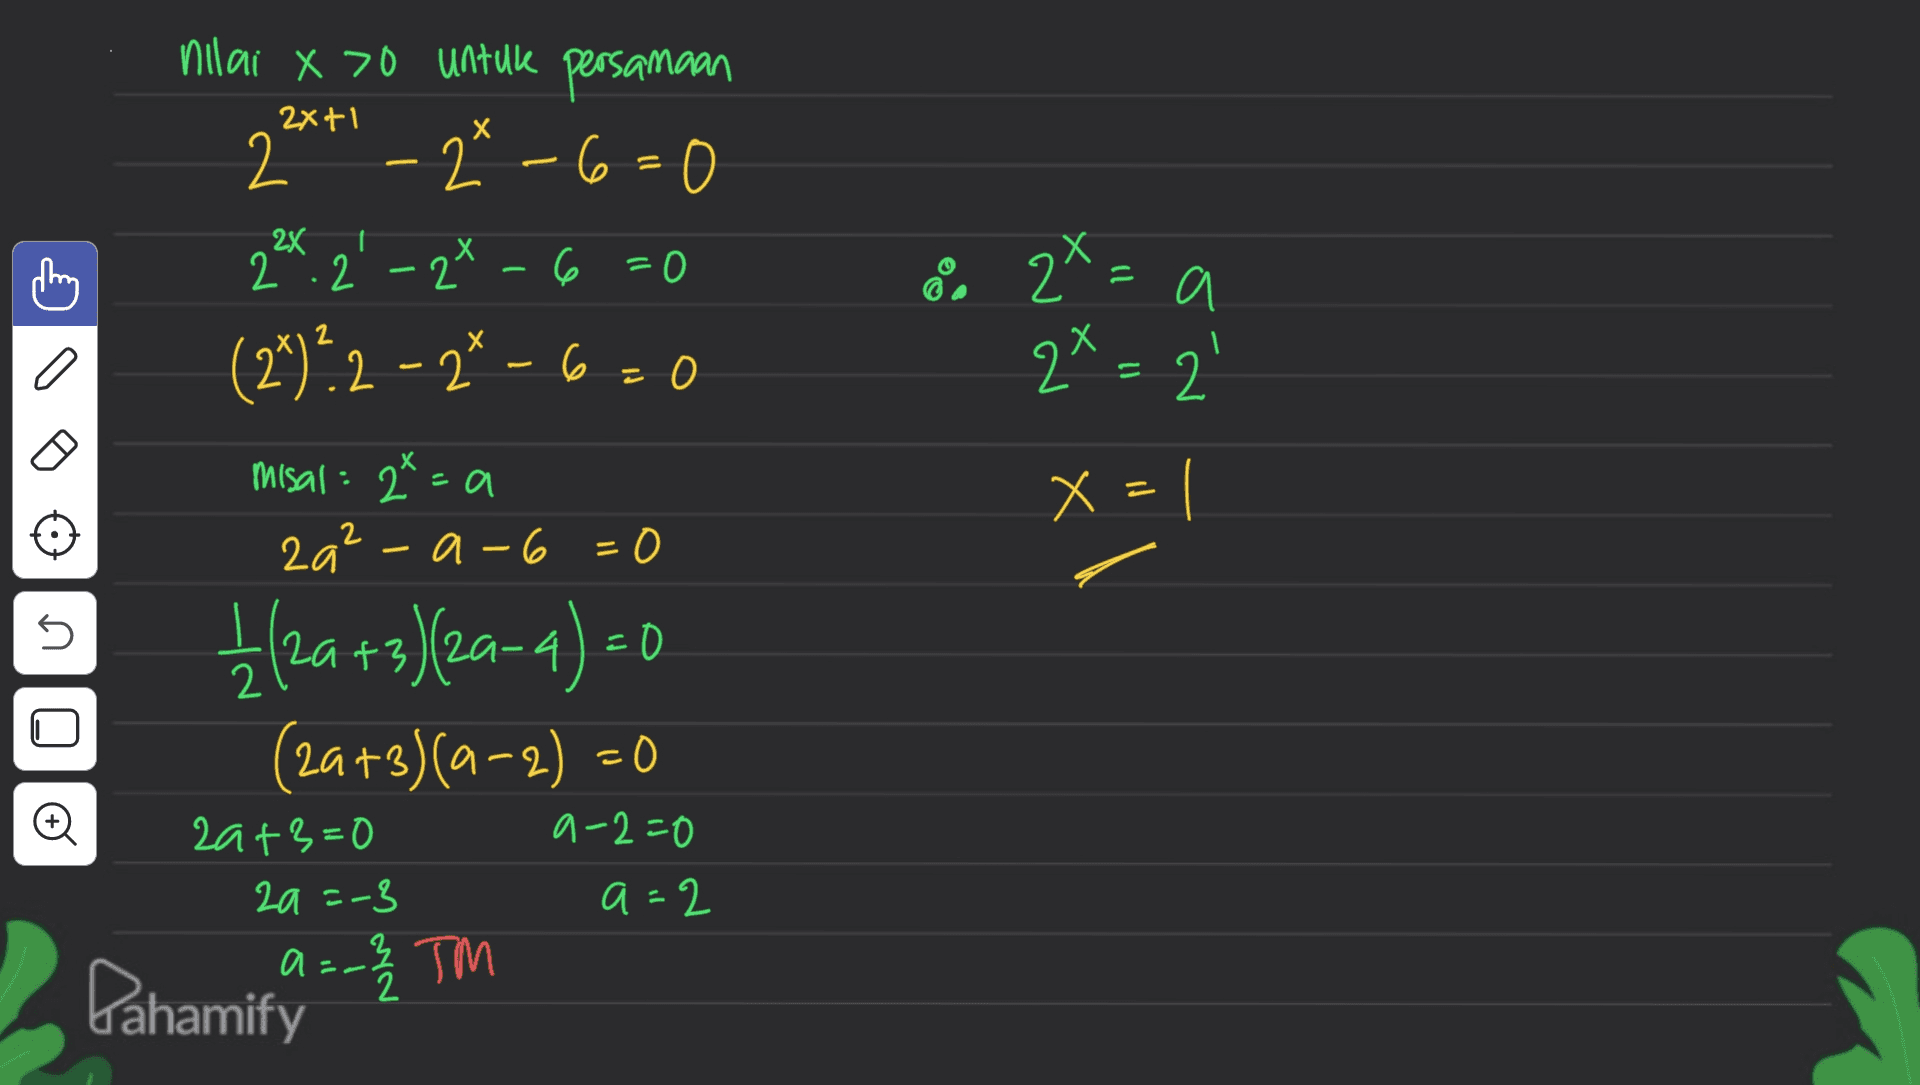 nilai x 70 untuk persamaan 20" - 2* -6=0 2X+1 2x 2:2 2 6 =0 8. 2x=a 2x = 2' a (2+)?2-2-6-0 x misal : 2²=a za² a-6 =0 x = - nio 1 (2a +3)(2a-4)=0 (2a+3)(0-2) = 0 o a-2=0 20+3=0 2a =-3 a=2 И a Pahamify =-2 / TM 